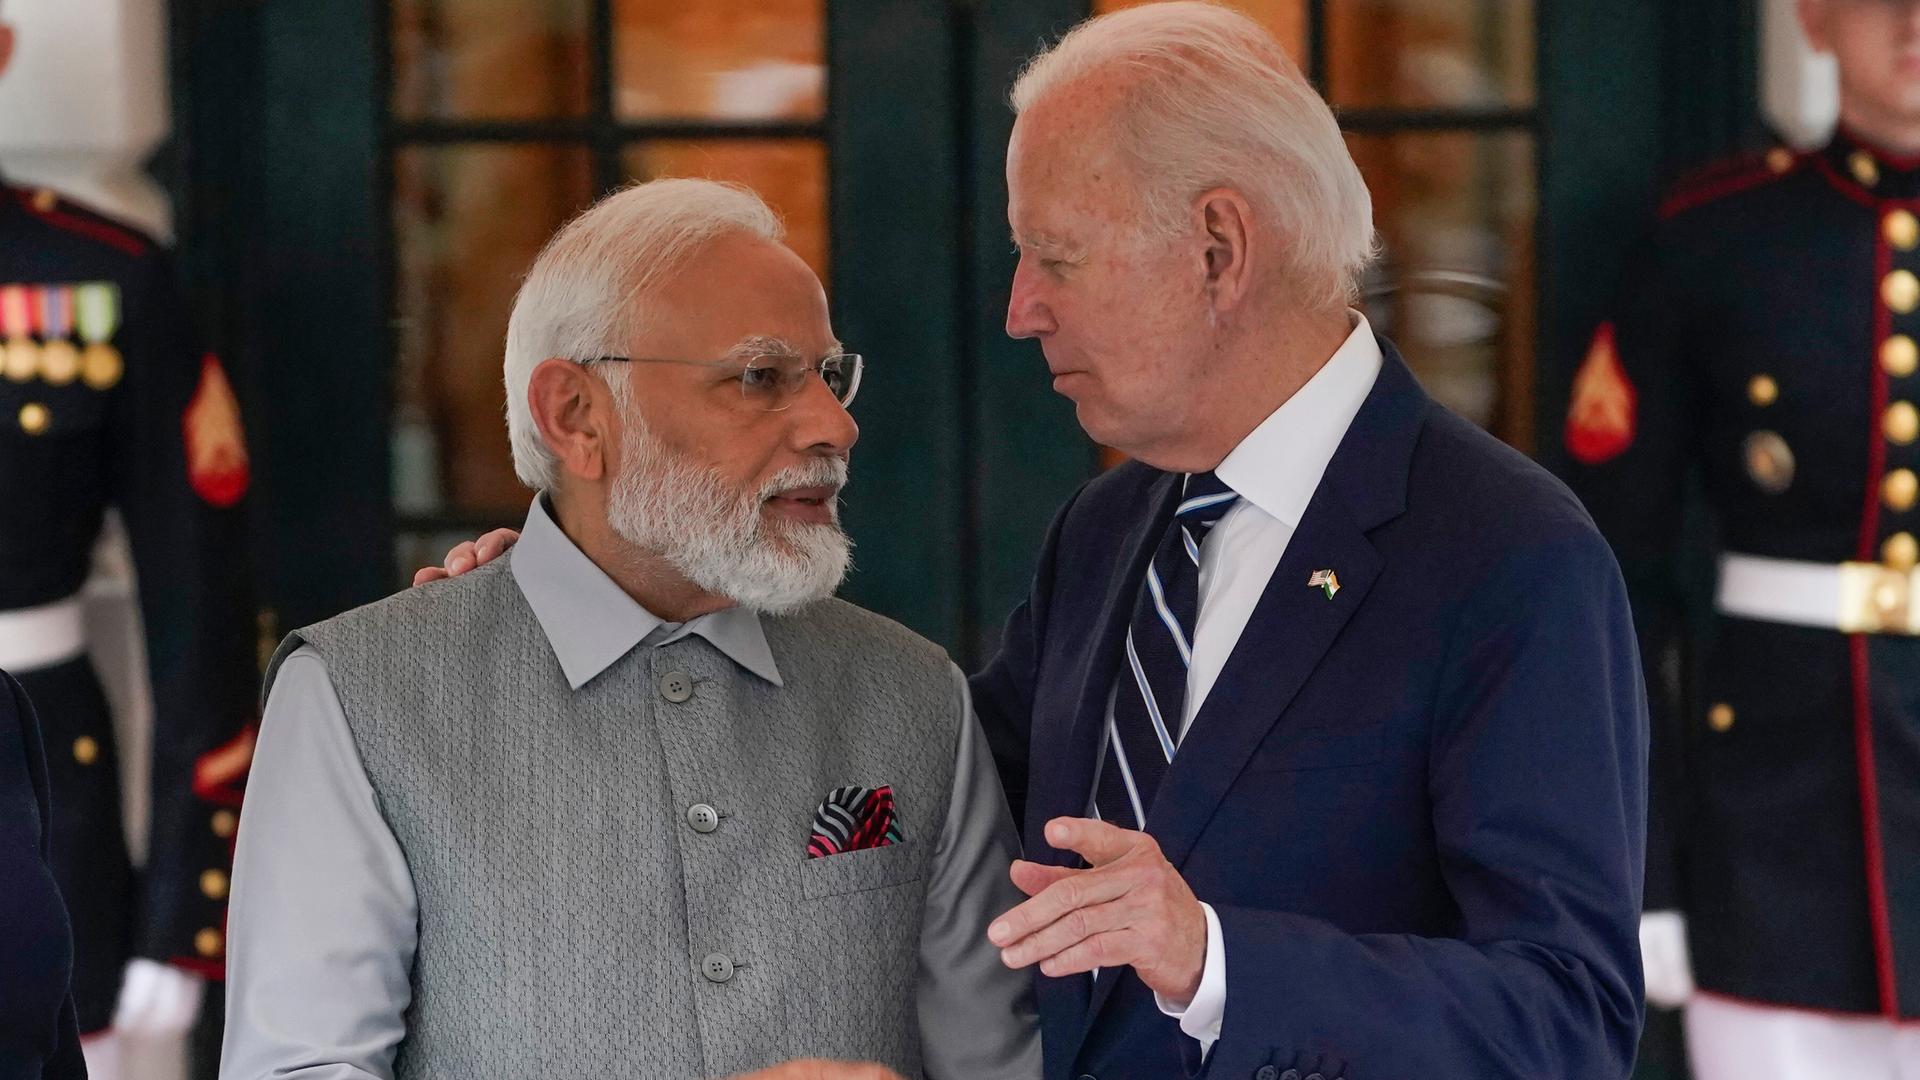 Joe Biden und Narendra Modi stehen einander zugewandt und unterhalten sich mit freundlichen Gesichtsausdrücken.